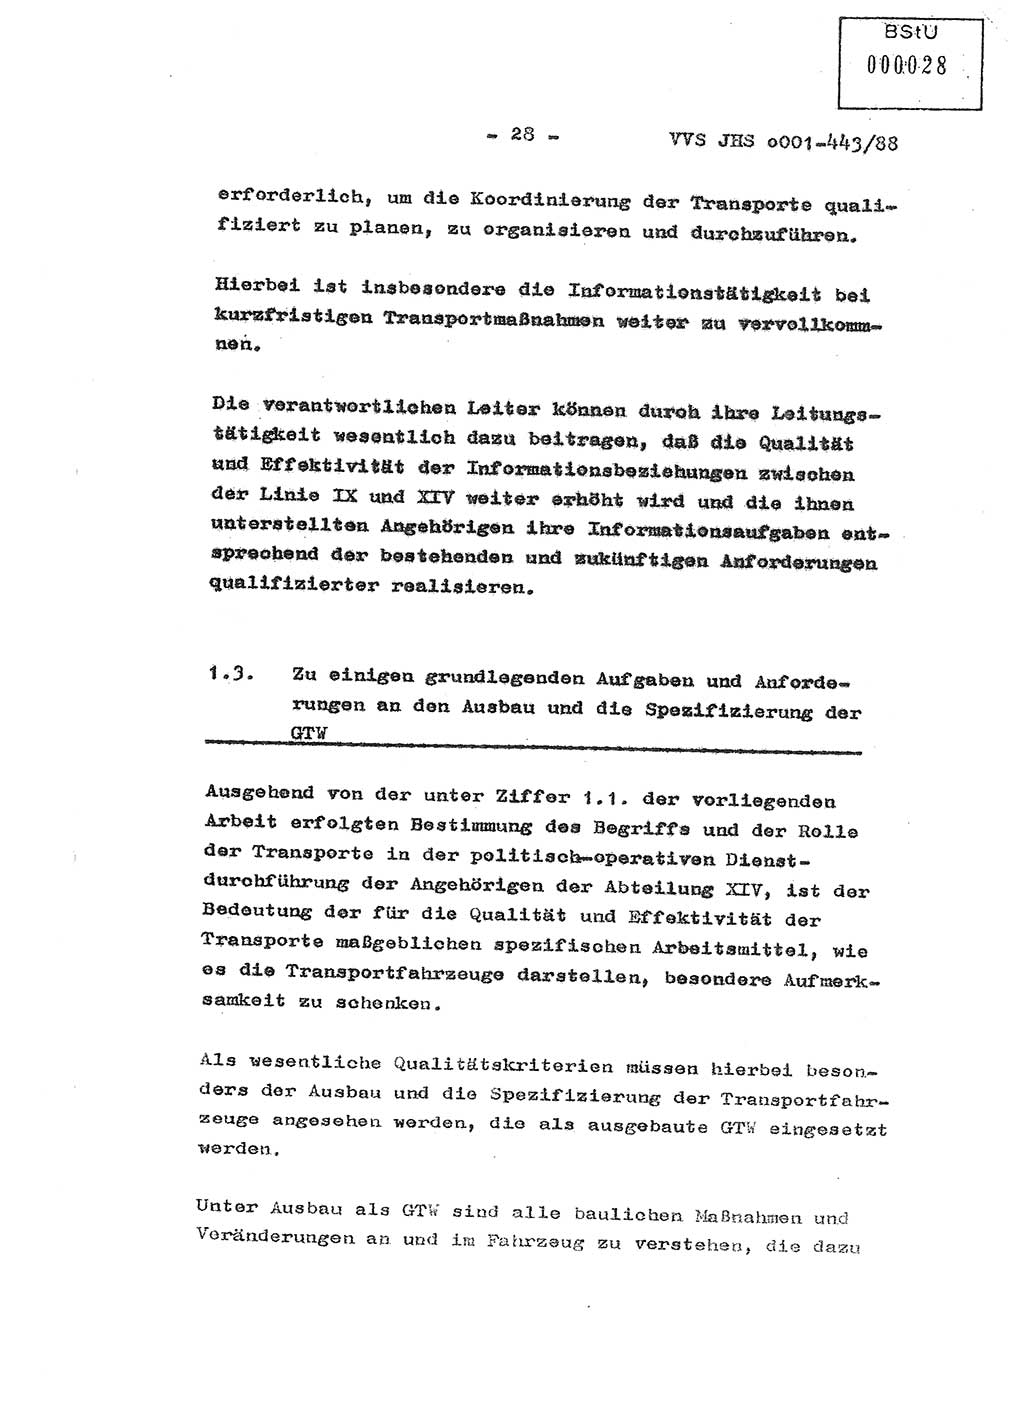 Diplomarbeit Hauptmann Michael Rast (Abt. ⅩⅣ), Major Bernd Rahaus (Abt. ⅩⅣ), Ministerium für Staatssicherheit (MfS) [Deutsche Demokratische Republik (DDR)], Juristische Hochschule (JHS), Vertrauliche Verschlußsache (VVS) o001-443/88, Potsdam 1988, Seite 28 (Dipl.-Arb. MfS DDR JHS VVS o001-443/88 1988, S. 28)